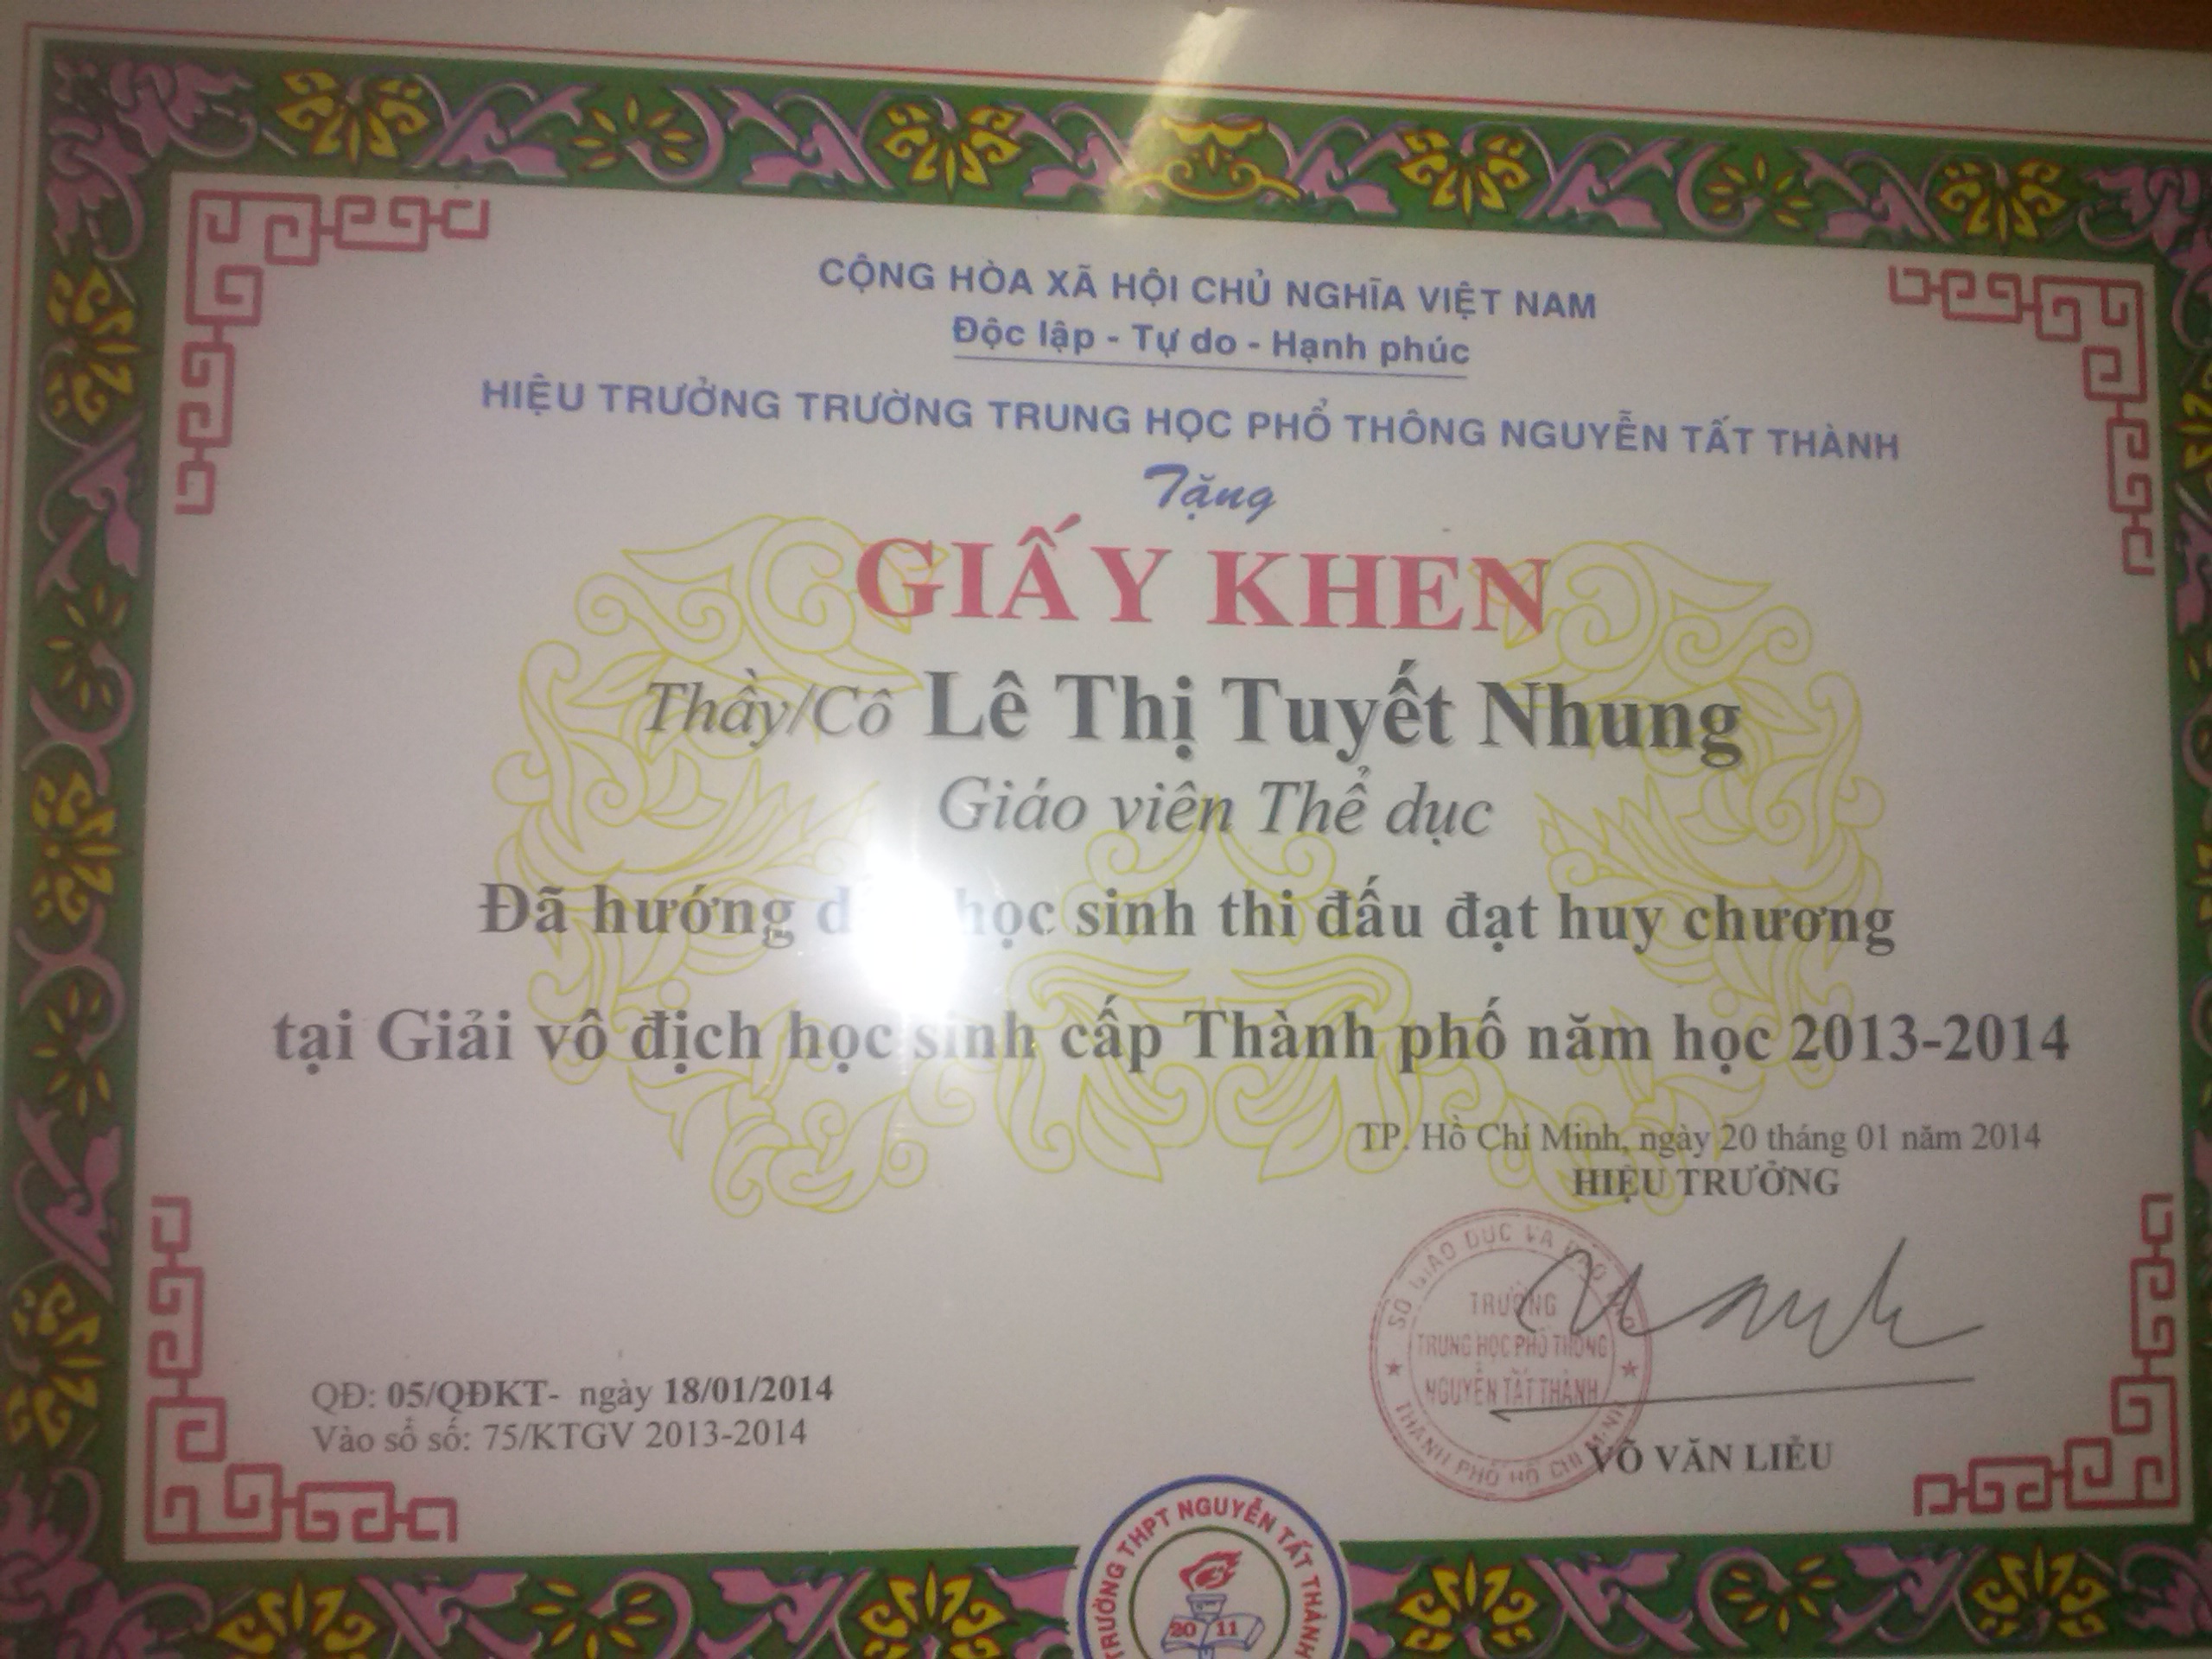 Giáo viên dang công tác tại trường Nguyễn Tất Thành